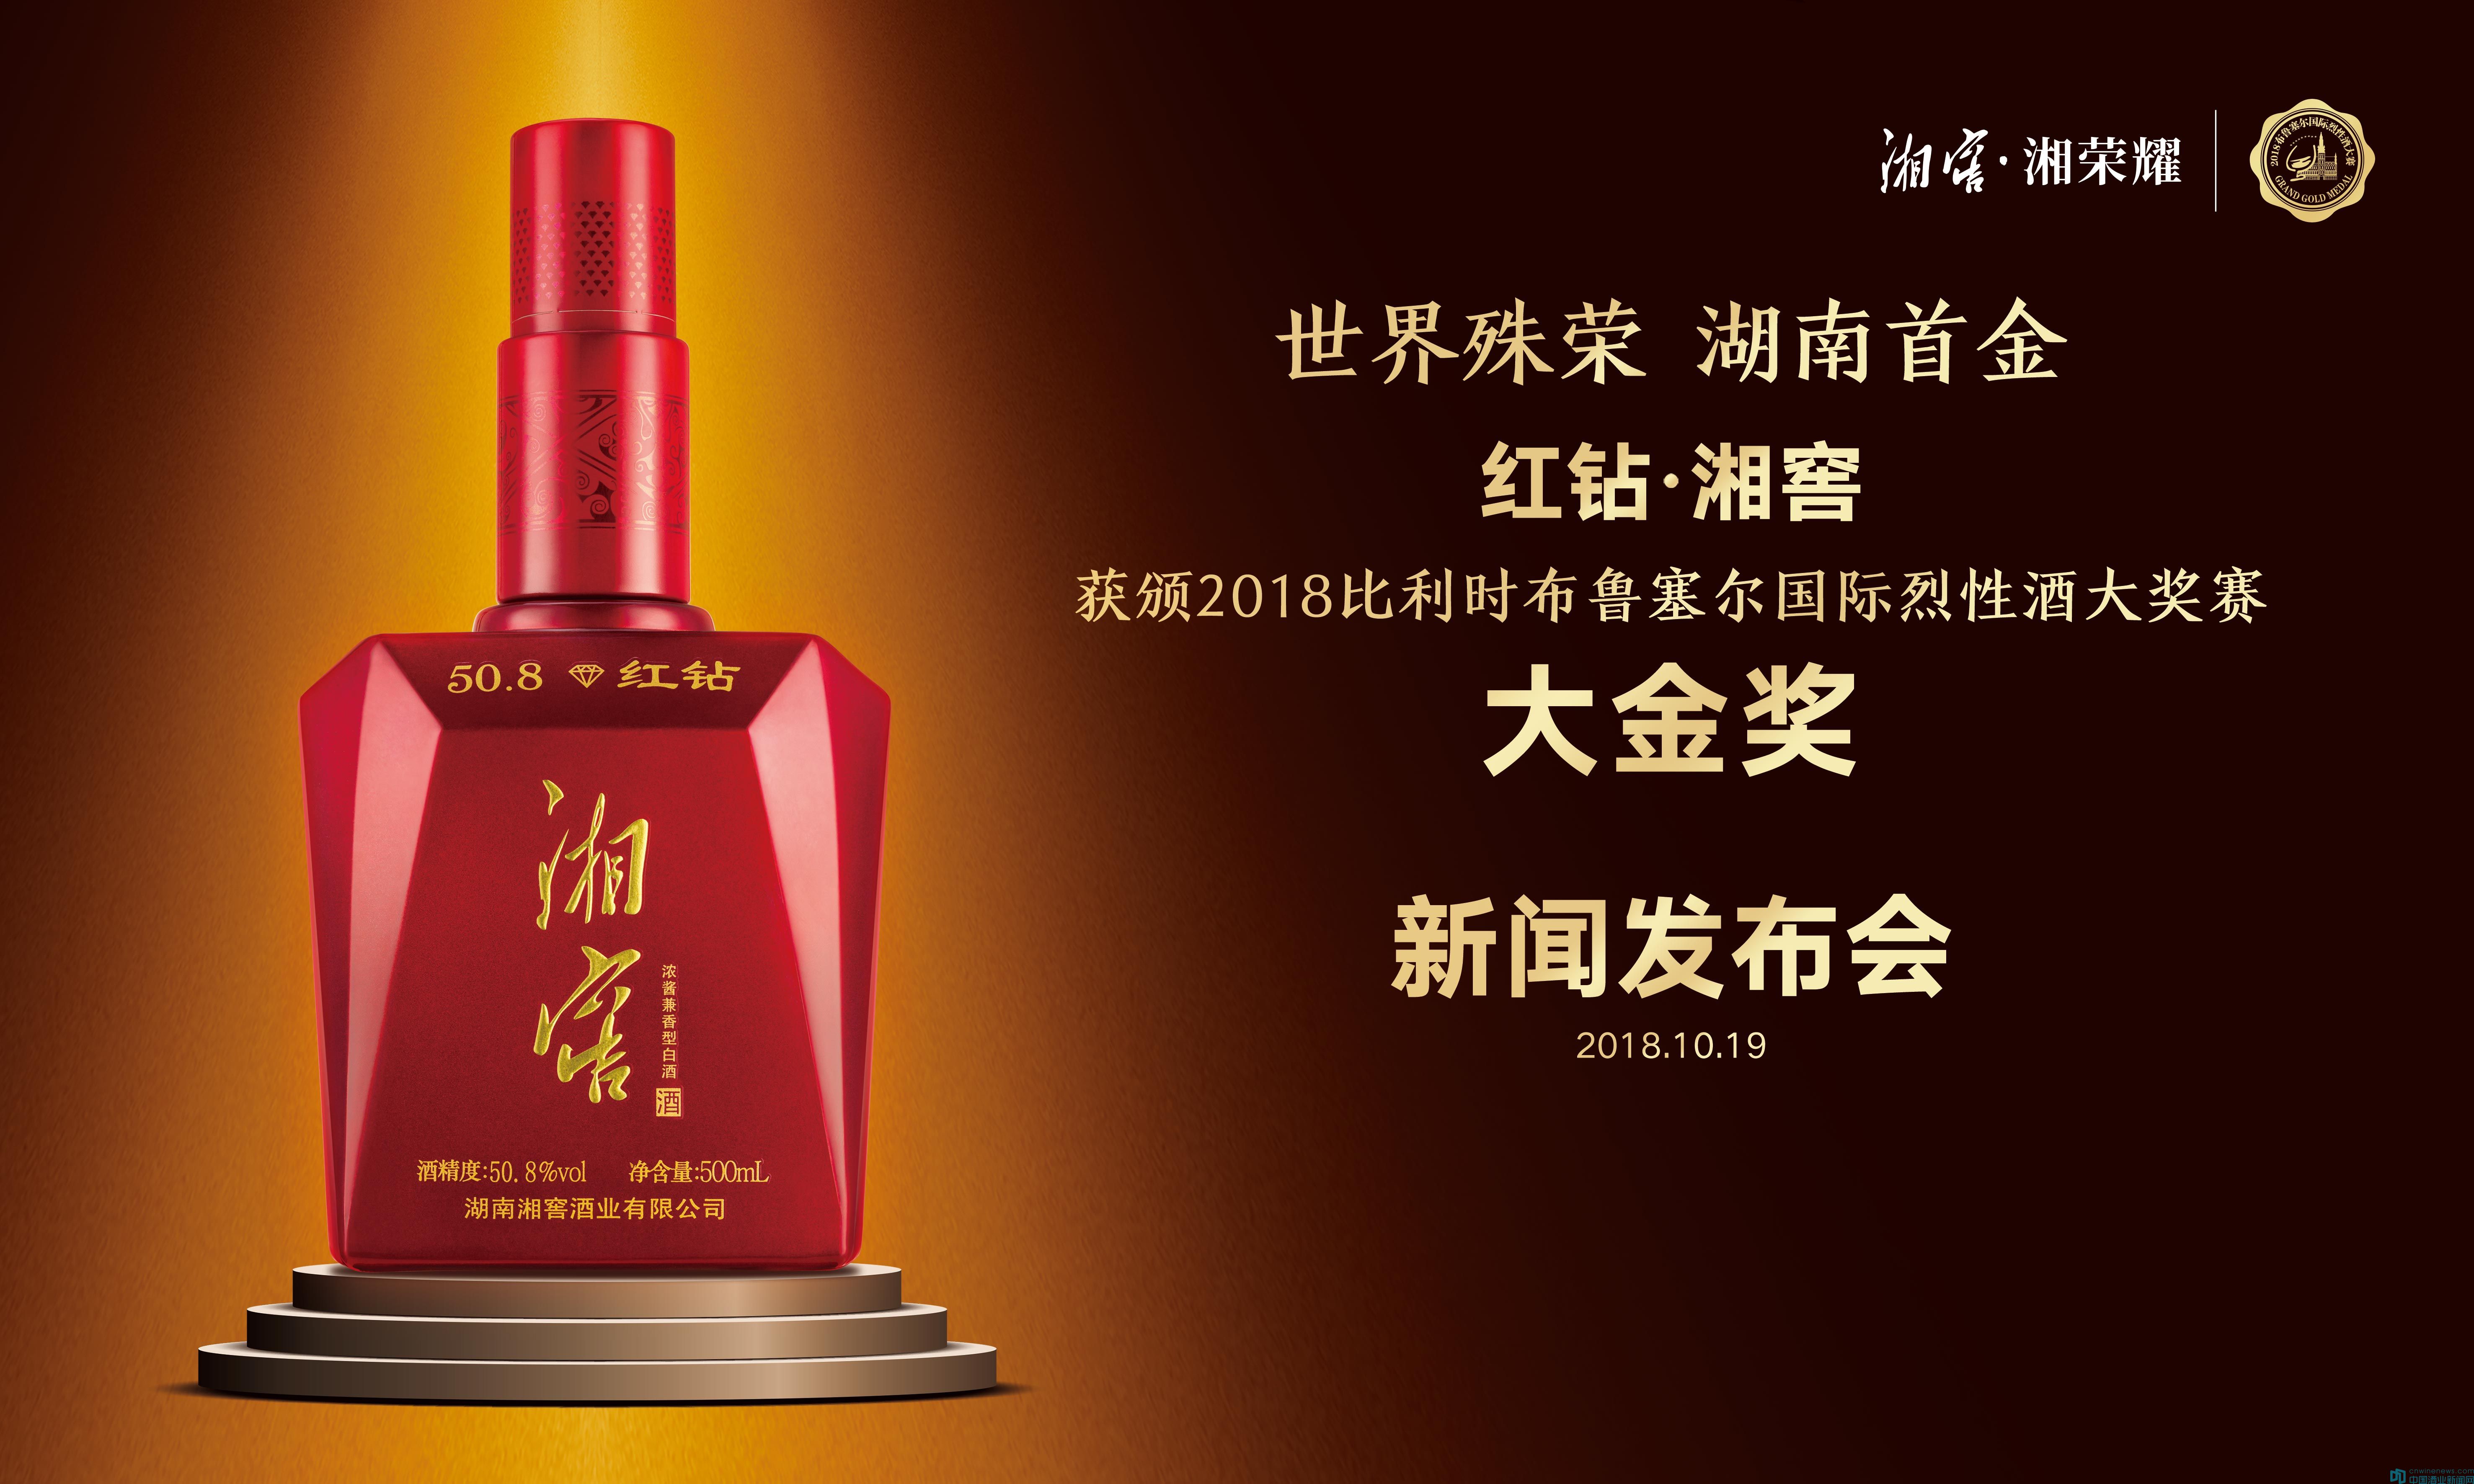 世界殊荣,湖南首金--红钻湘窖获颁布鲁塞尔国际烈酒赛大金奖